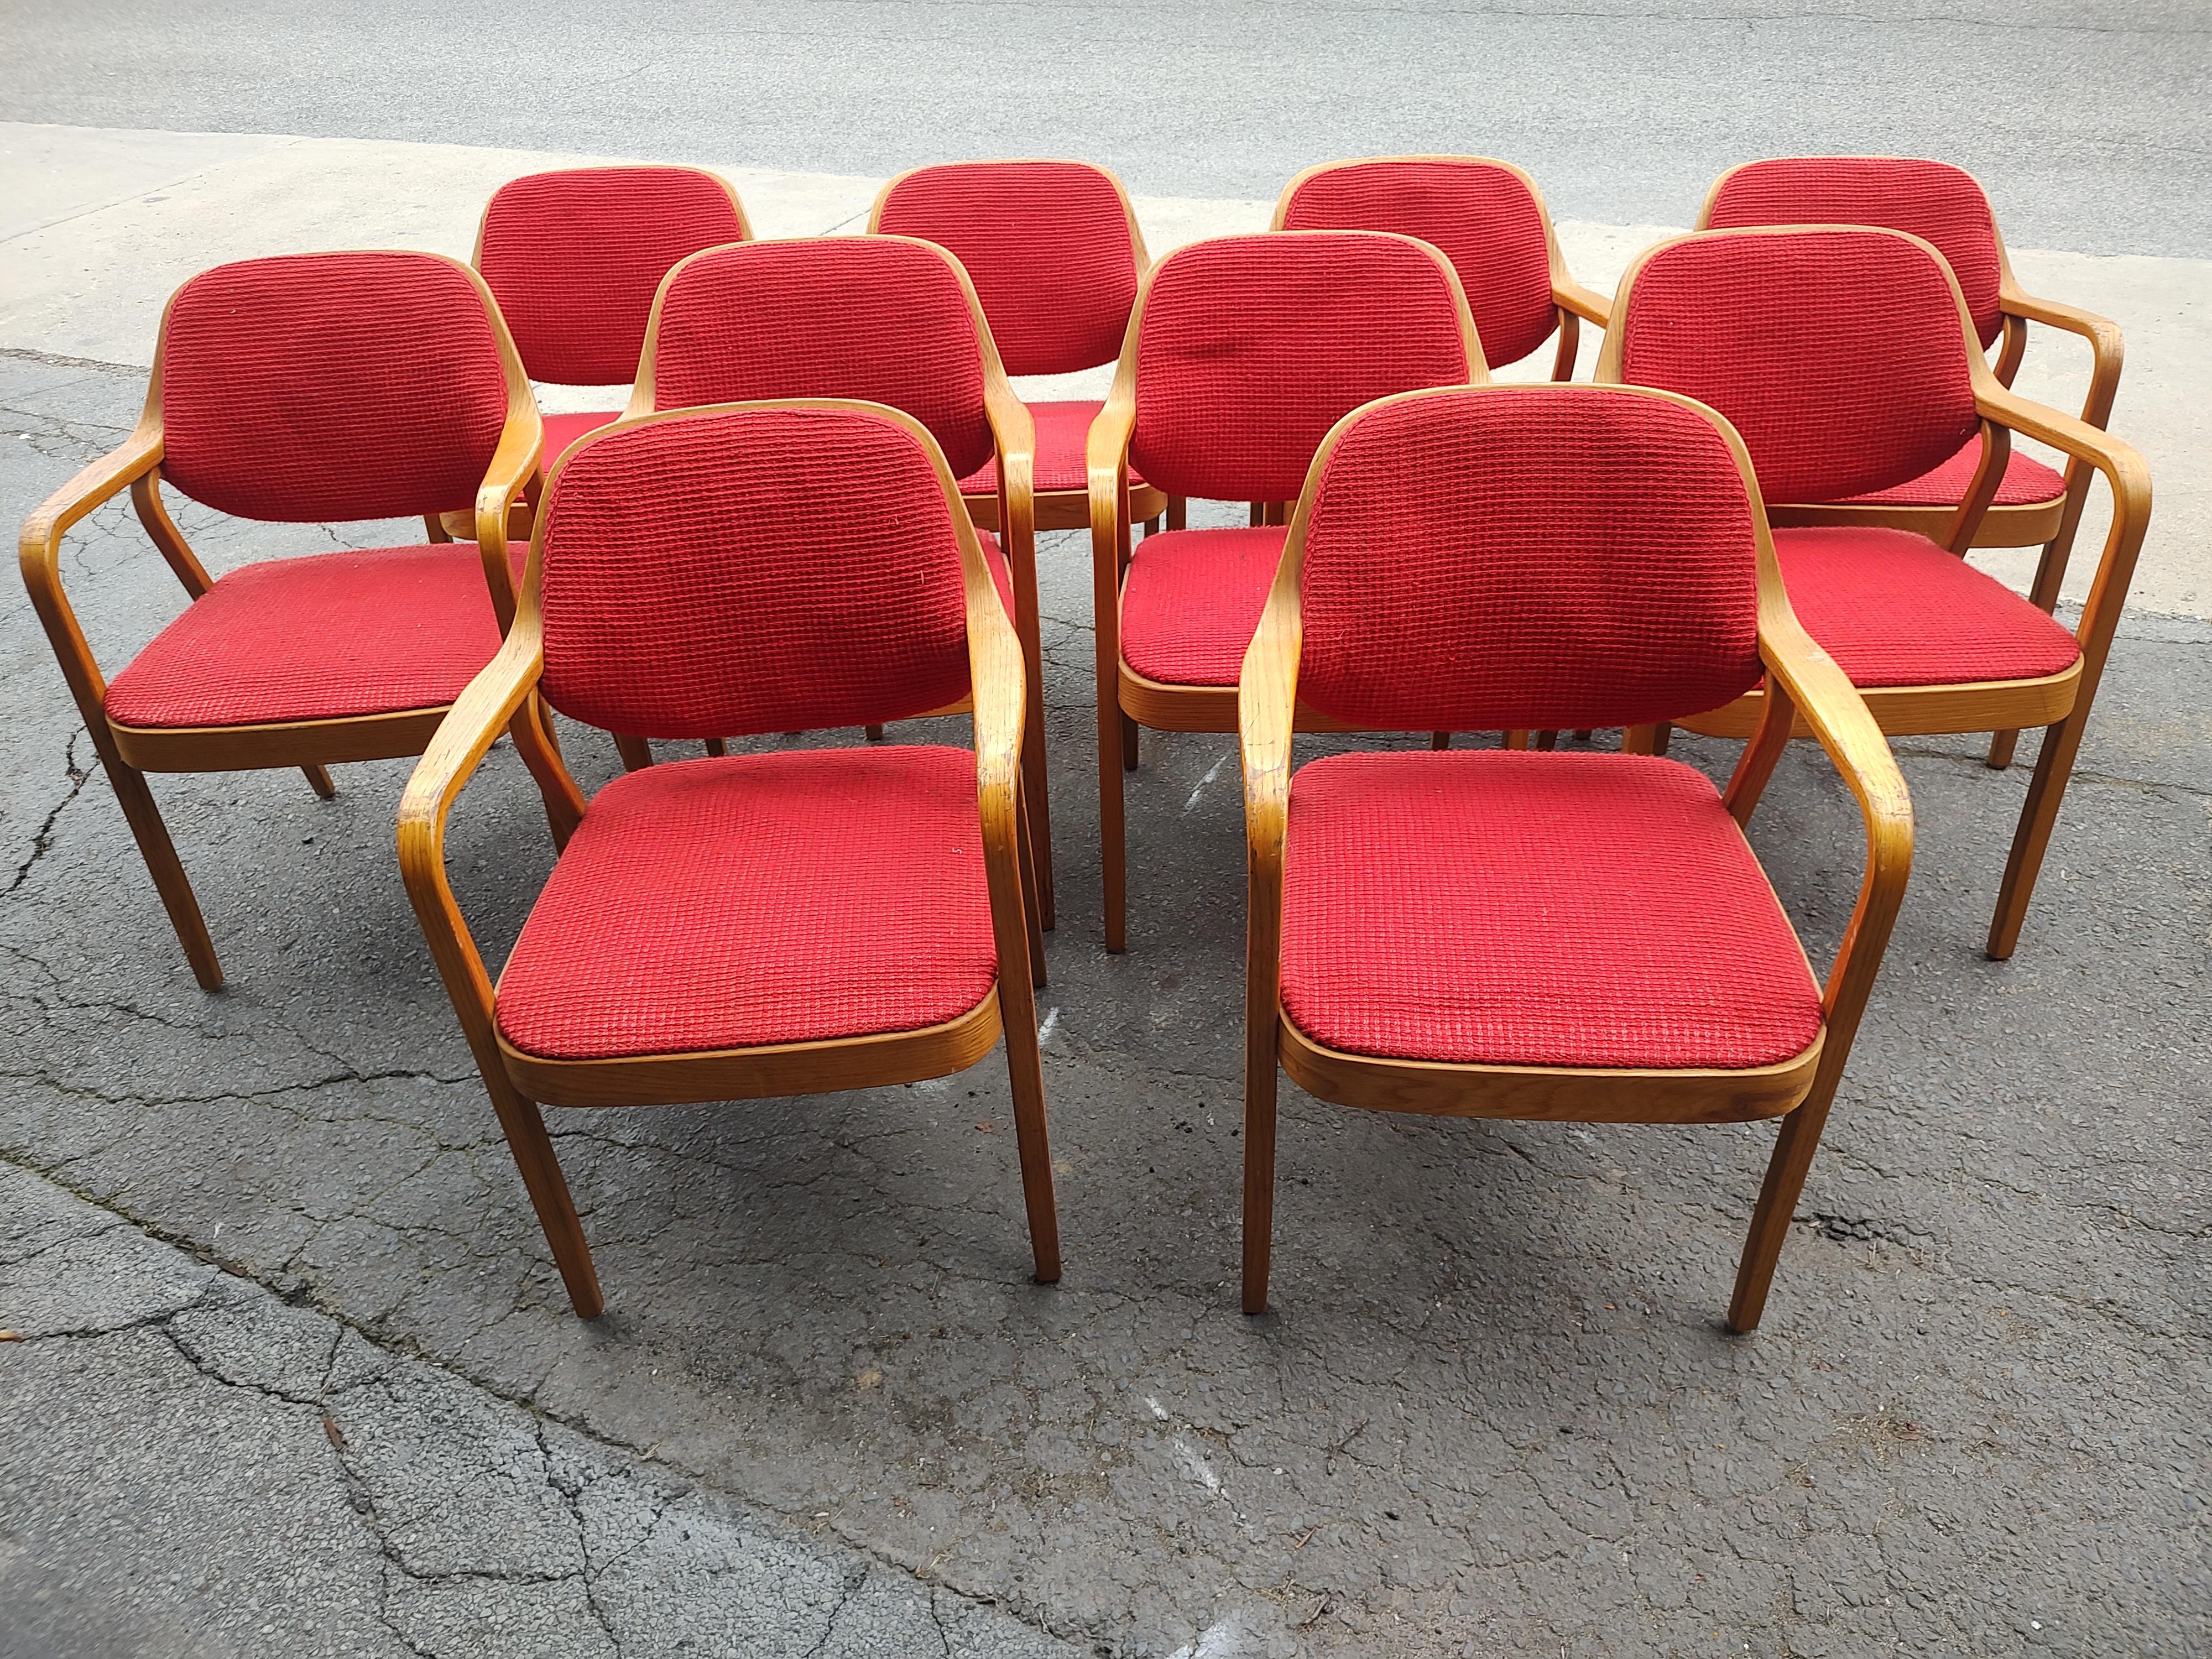 Großer Satz von zehn Sesseln für Esszimmer oder Konferenzräume, entworfen von Bill Stephens für Knoll International. Aus Eichenholz gefertigt und mit Dampf gebogen, um das Auge und den Körper zu erfreuen. Sehr robust und bequem. Stoff und